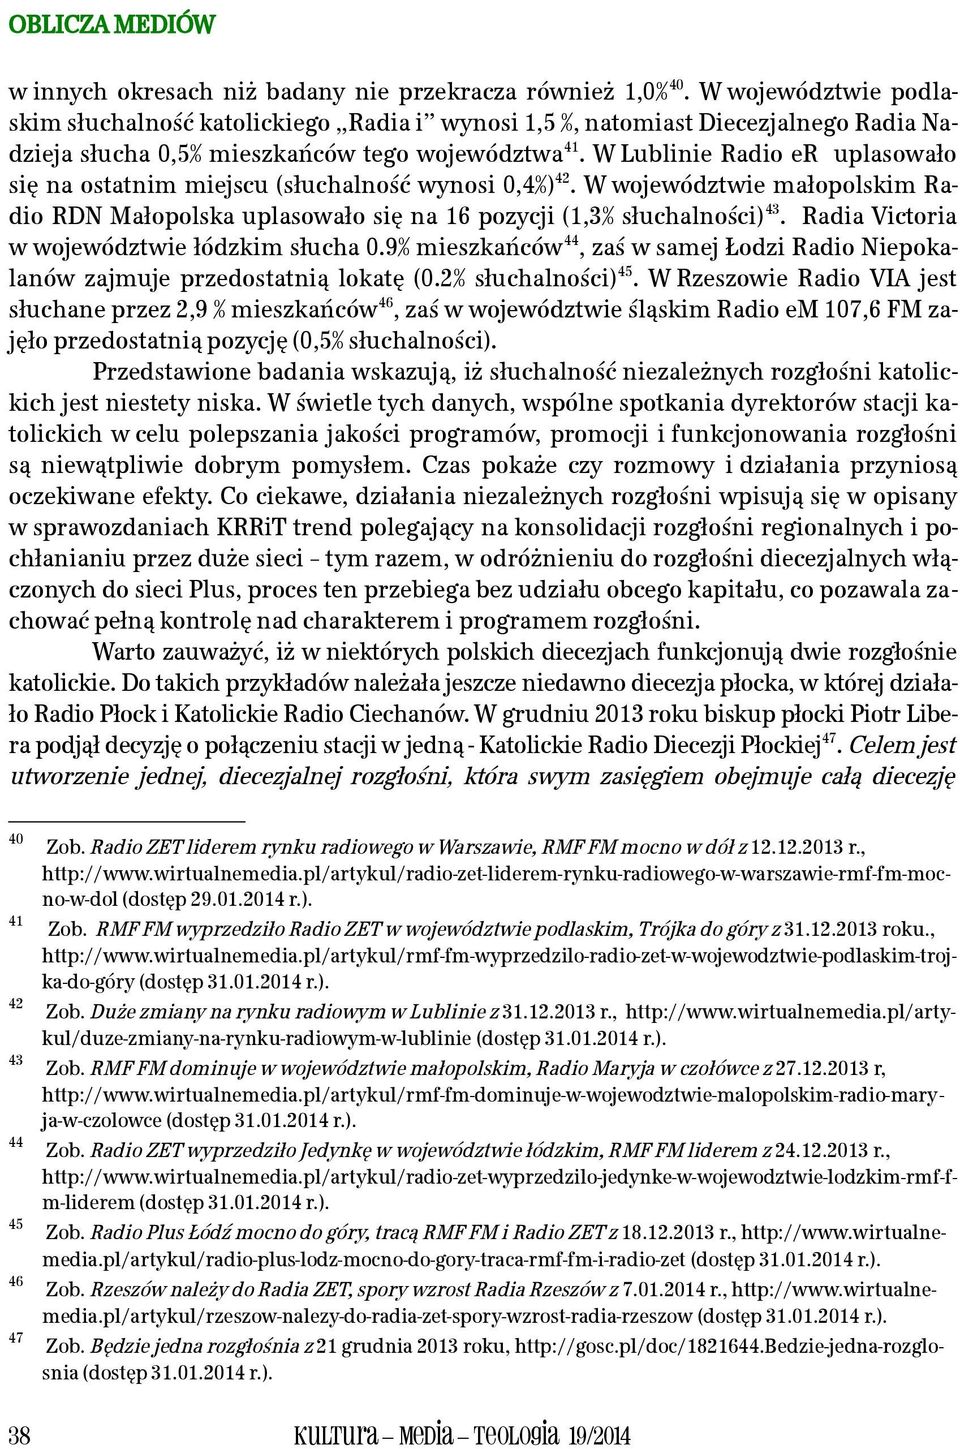 W Lublinie Radio er uplasowało się na ostatnim miejscu (słuchalność wynosi 0,4%) 42. W województwie małopolskim Radio RDN Małopolska uplasowało się na 16 pozycji (1,3% słuchalności) 43.